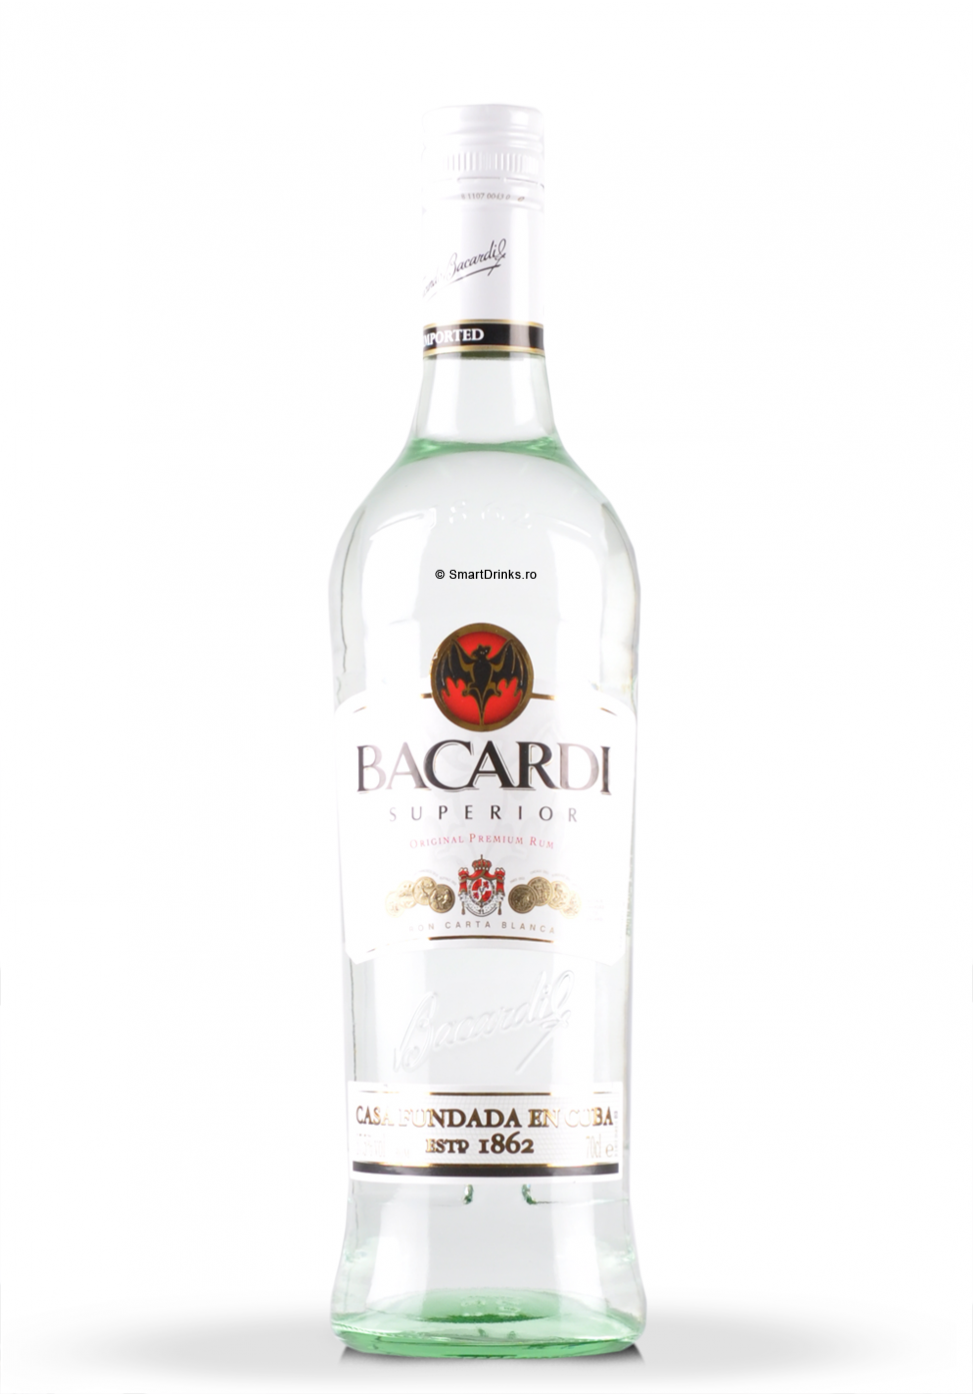 Filename: 0357 Bacardi Superior Original Premium Rum Gallery 1 973X1395.png - Bacardi, Transparent background PNG HD thumbnail